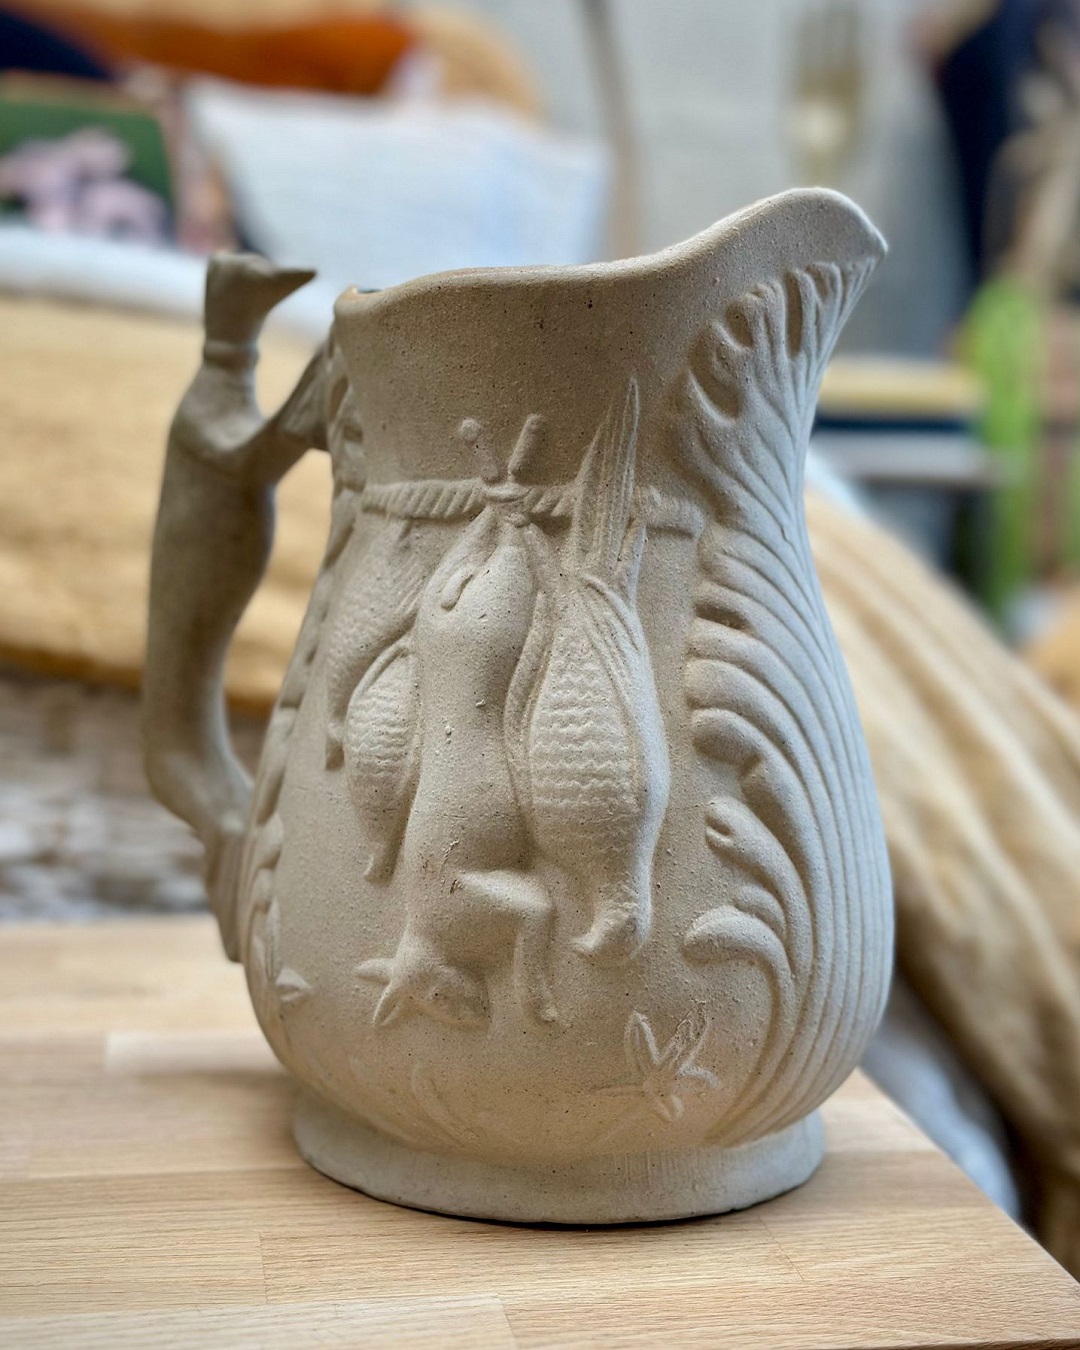 Vintage pottery jug on table